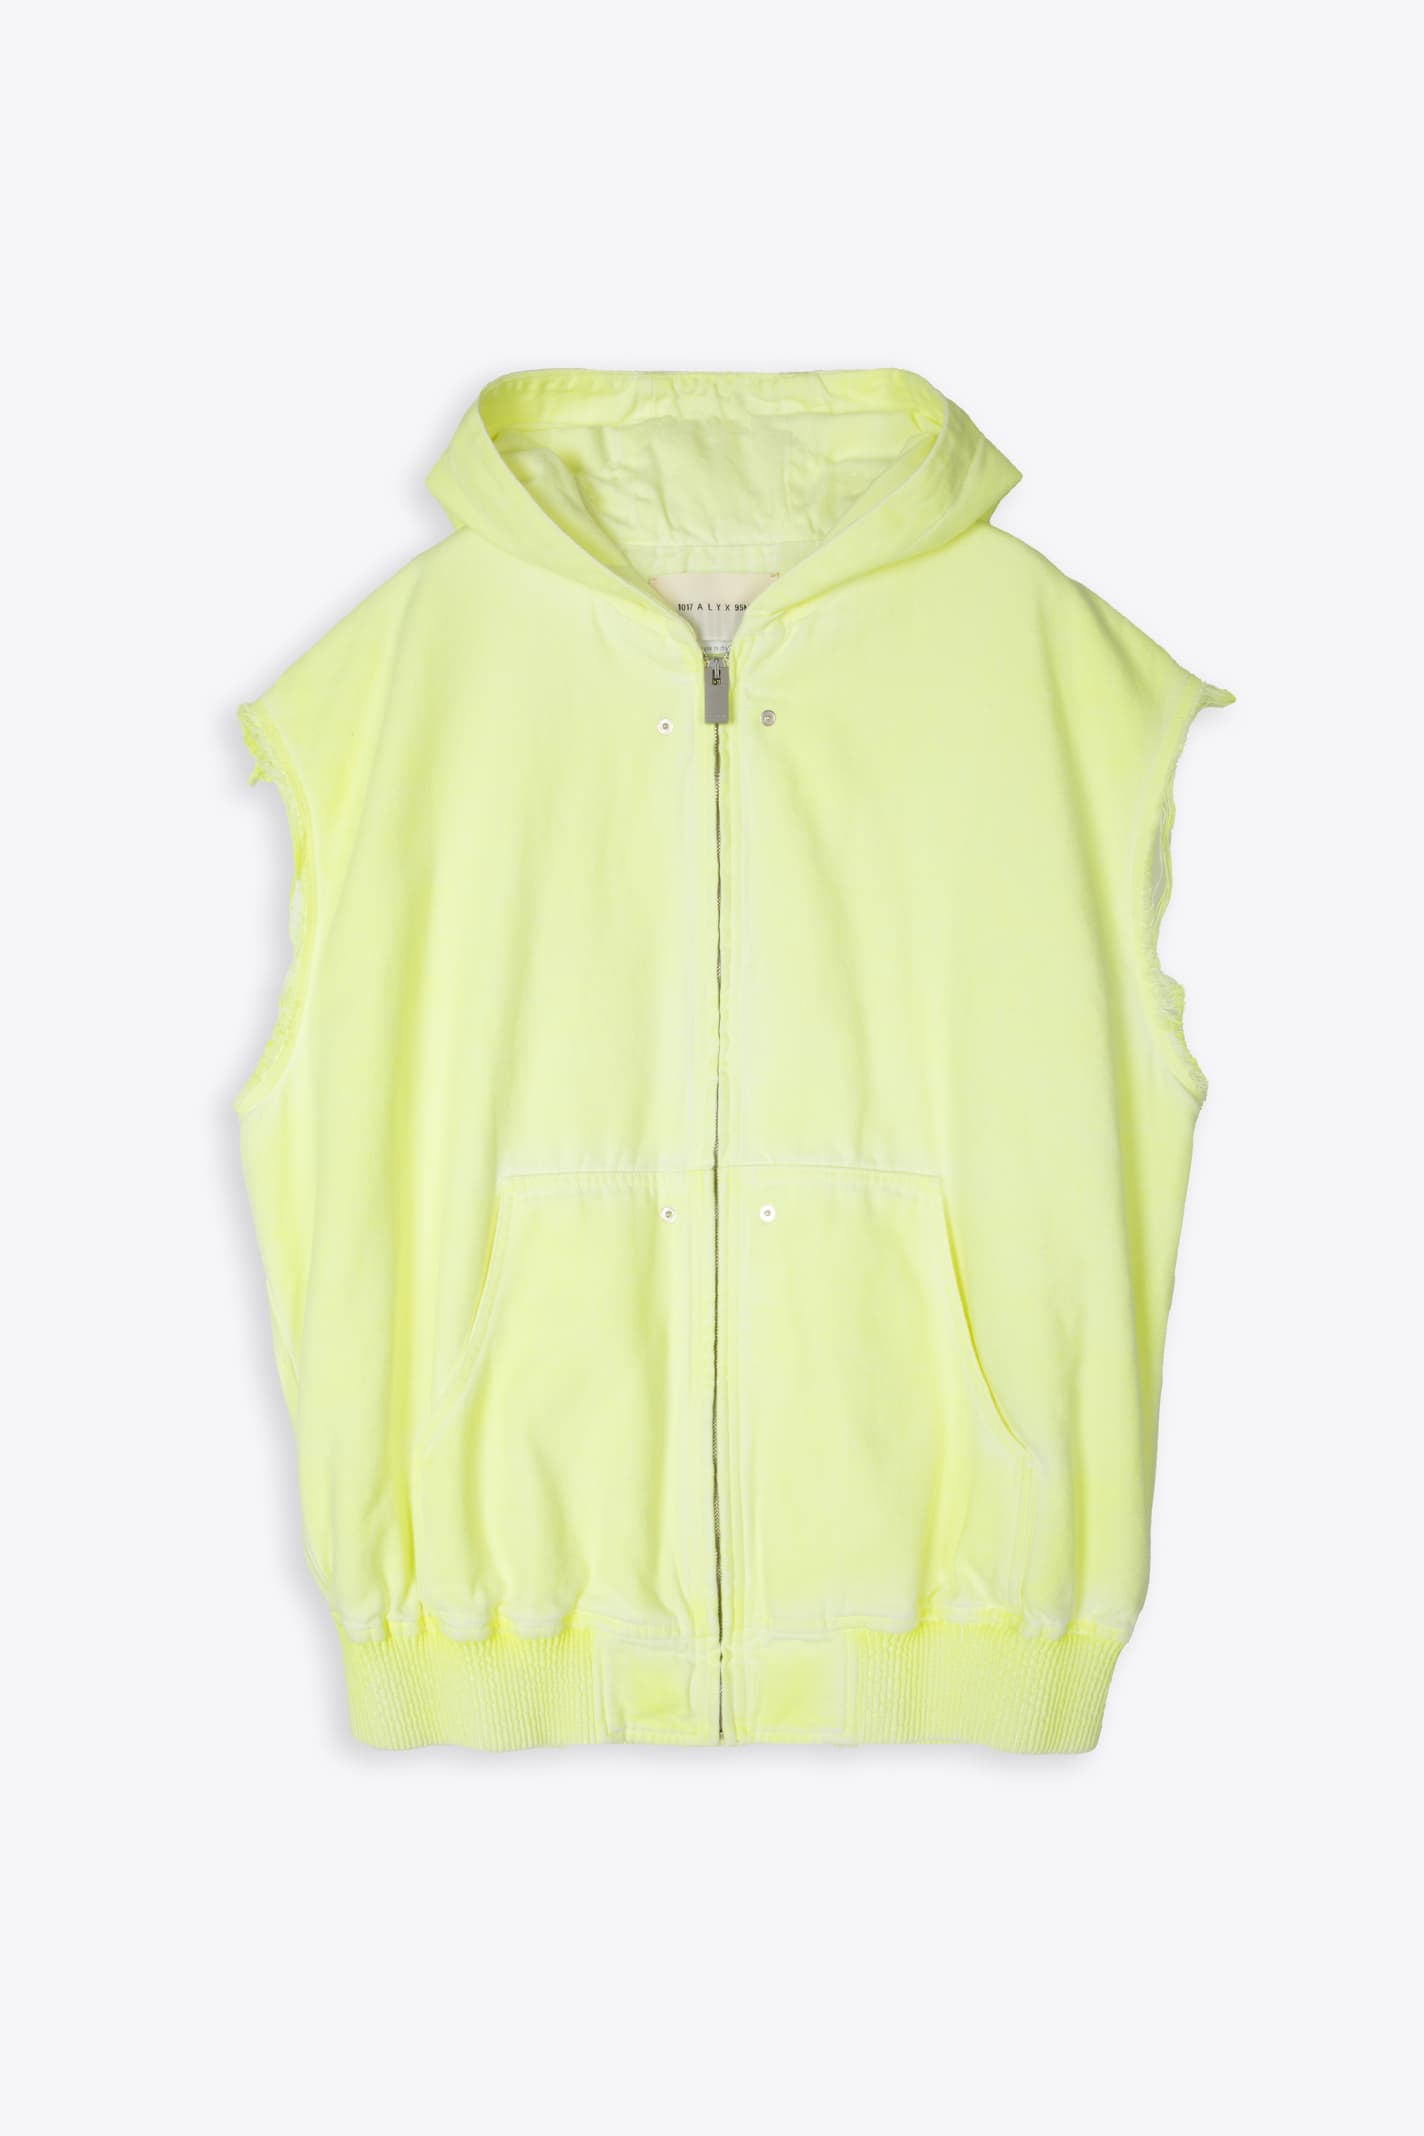 1017 ALYX 9SM Sleeveless Skate Jacket Neon Yellow Canvas Hooded Vest - Sleeveless Skate Jacket